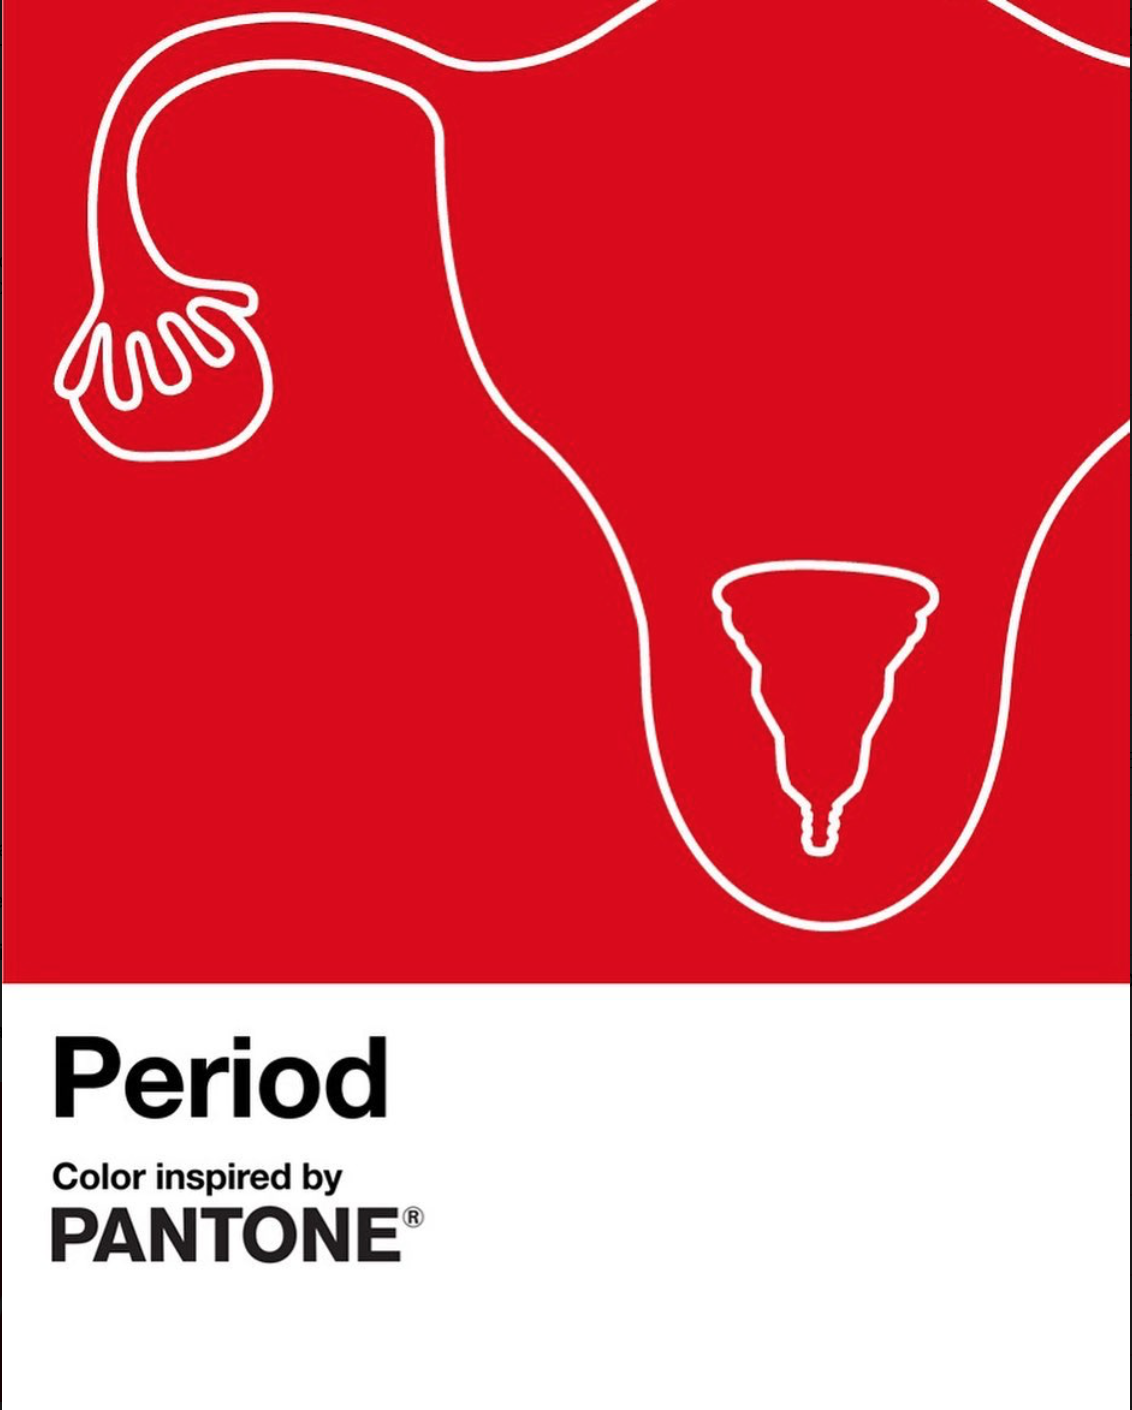 Pantone выпустили новый оттенок красного Period — он должен стать новым символом менструации